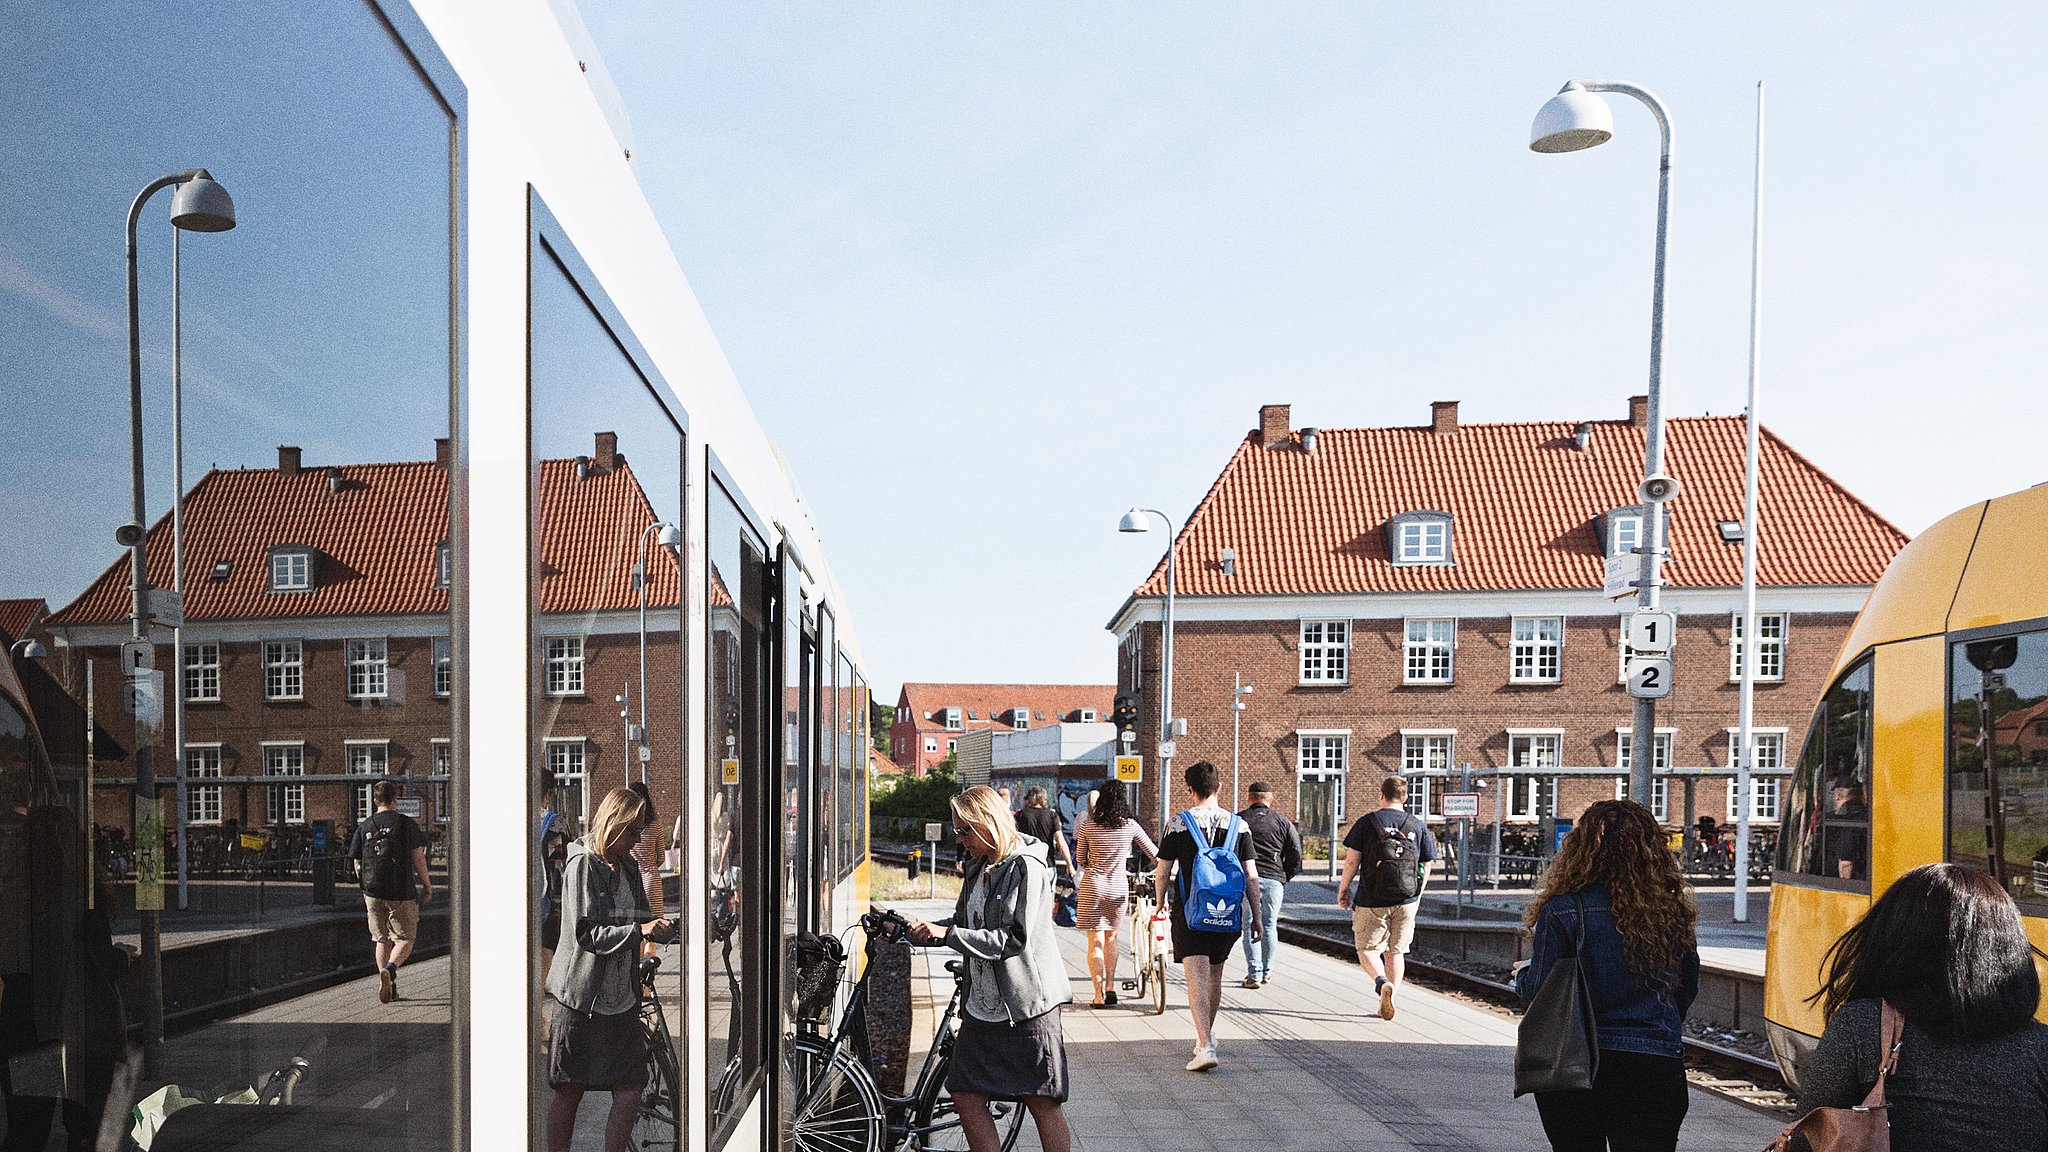 Tag gratis ombord på bussen – nyt forsøg få flere til at tage offentlig transport | TV2